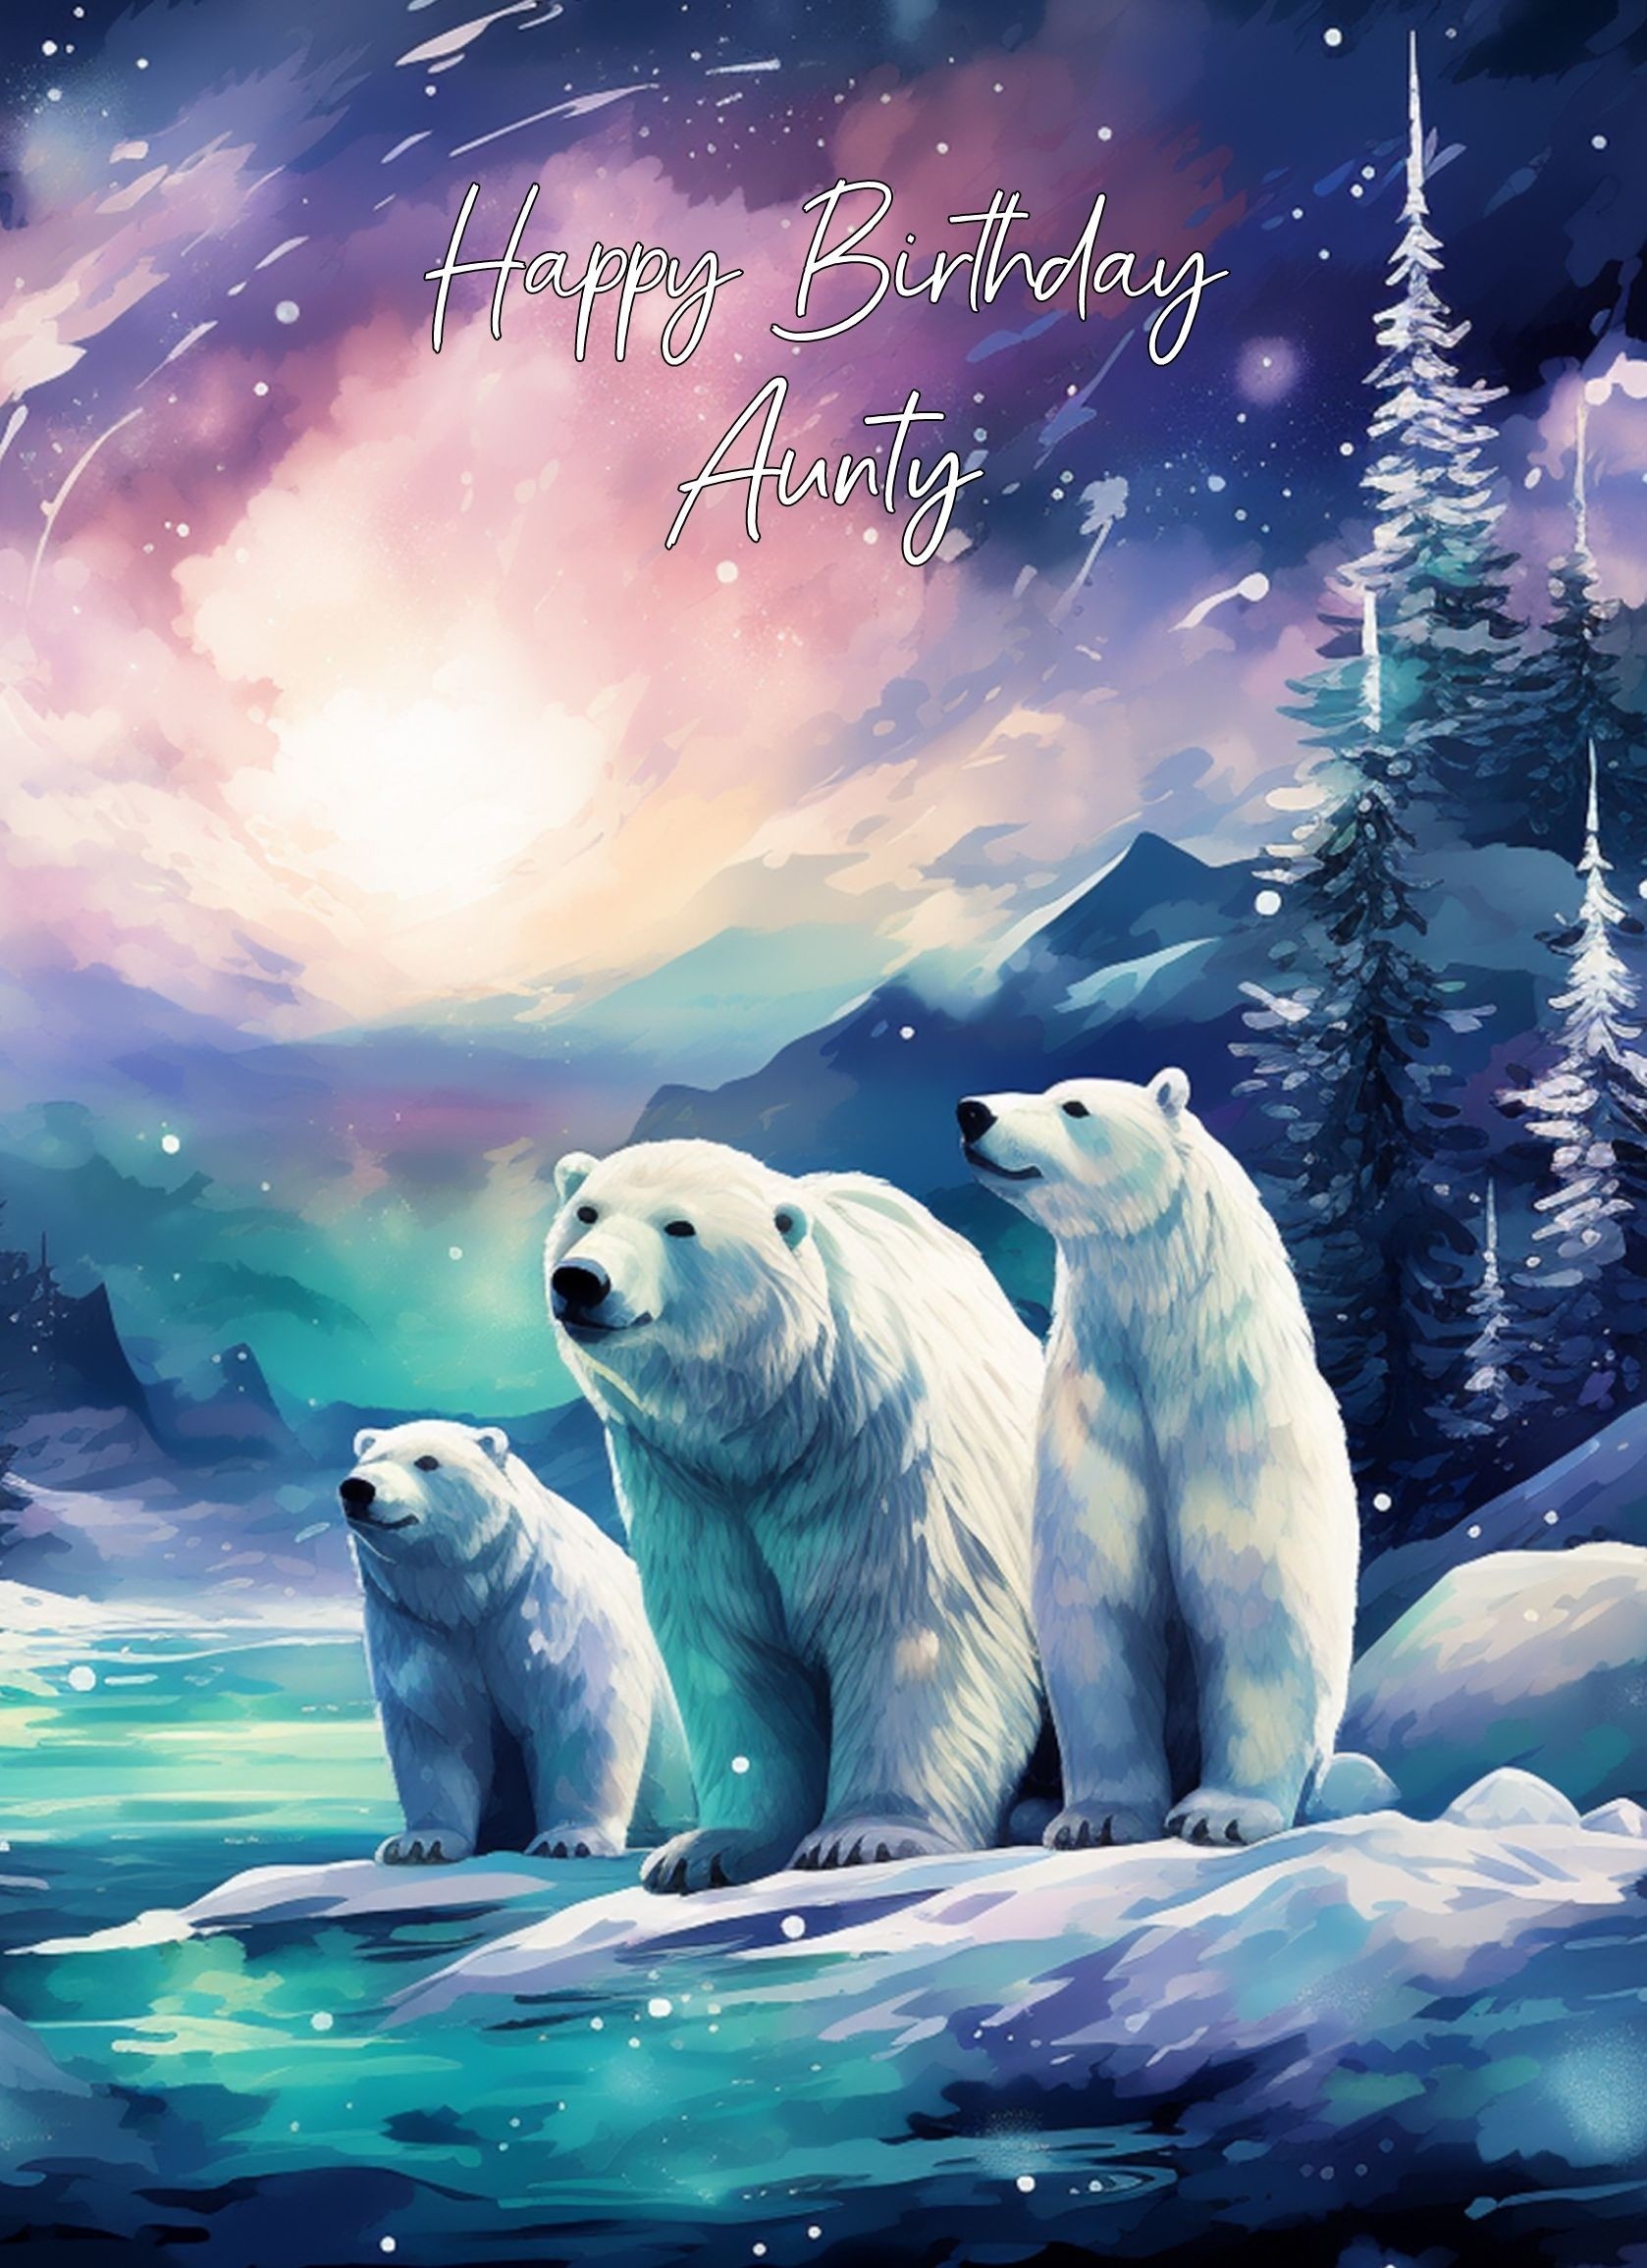 Polar Bear Art Birthday Card For Aunty (Design 1)